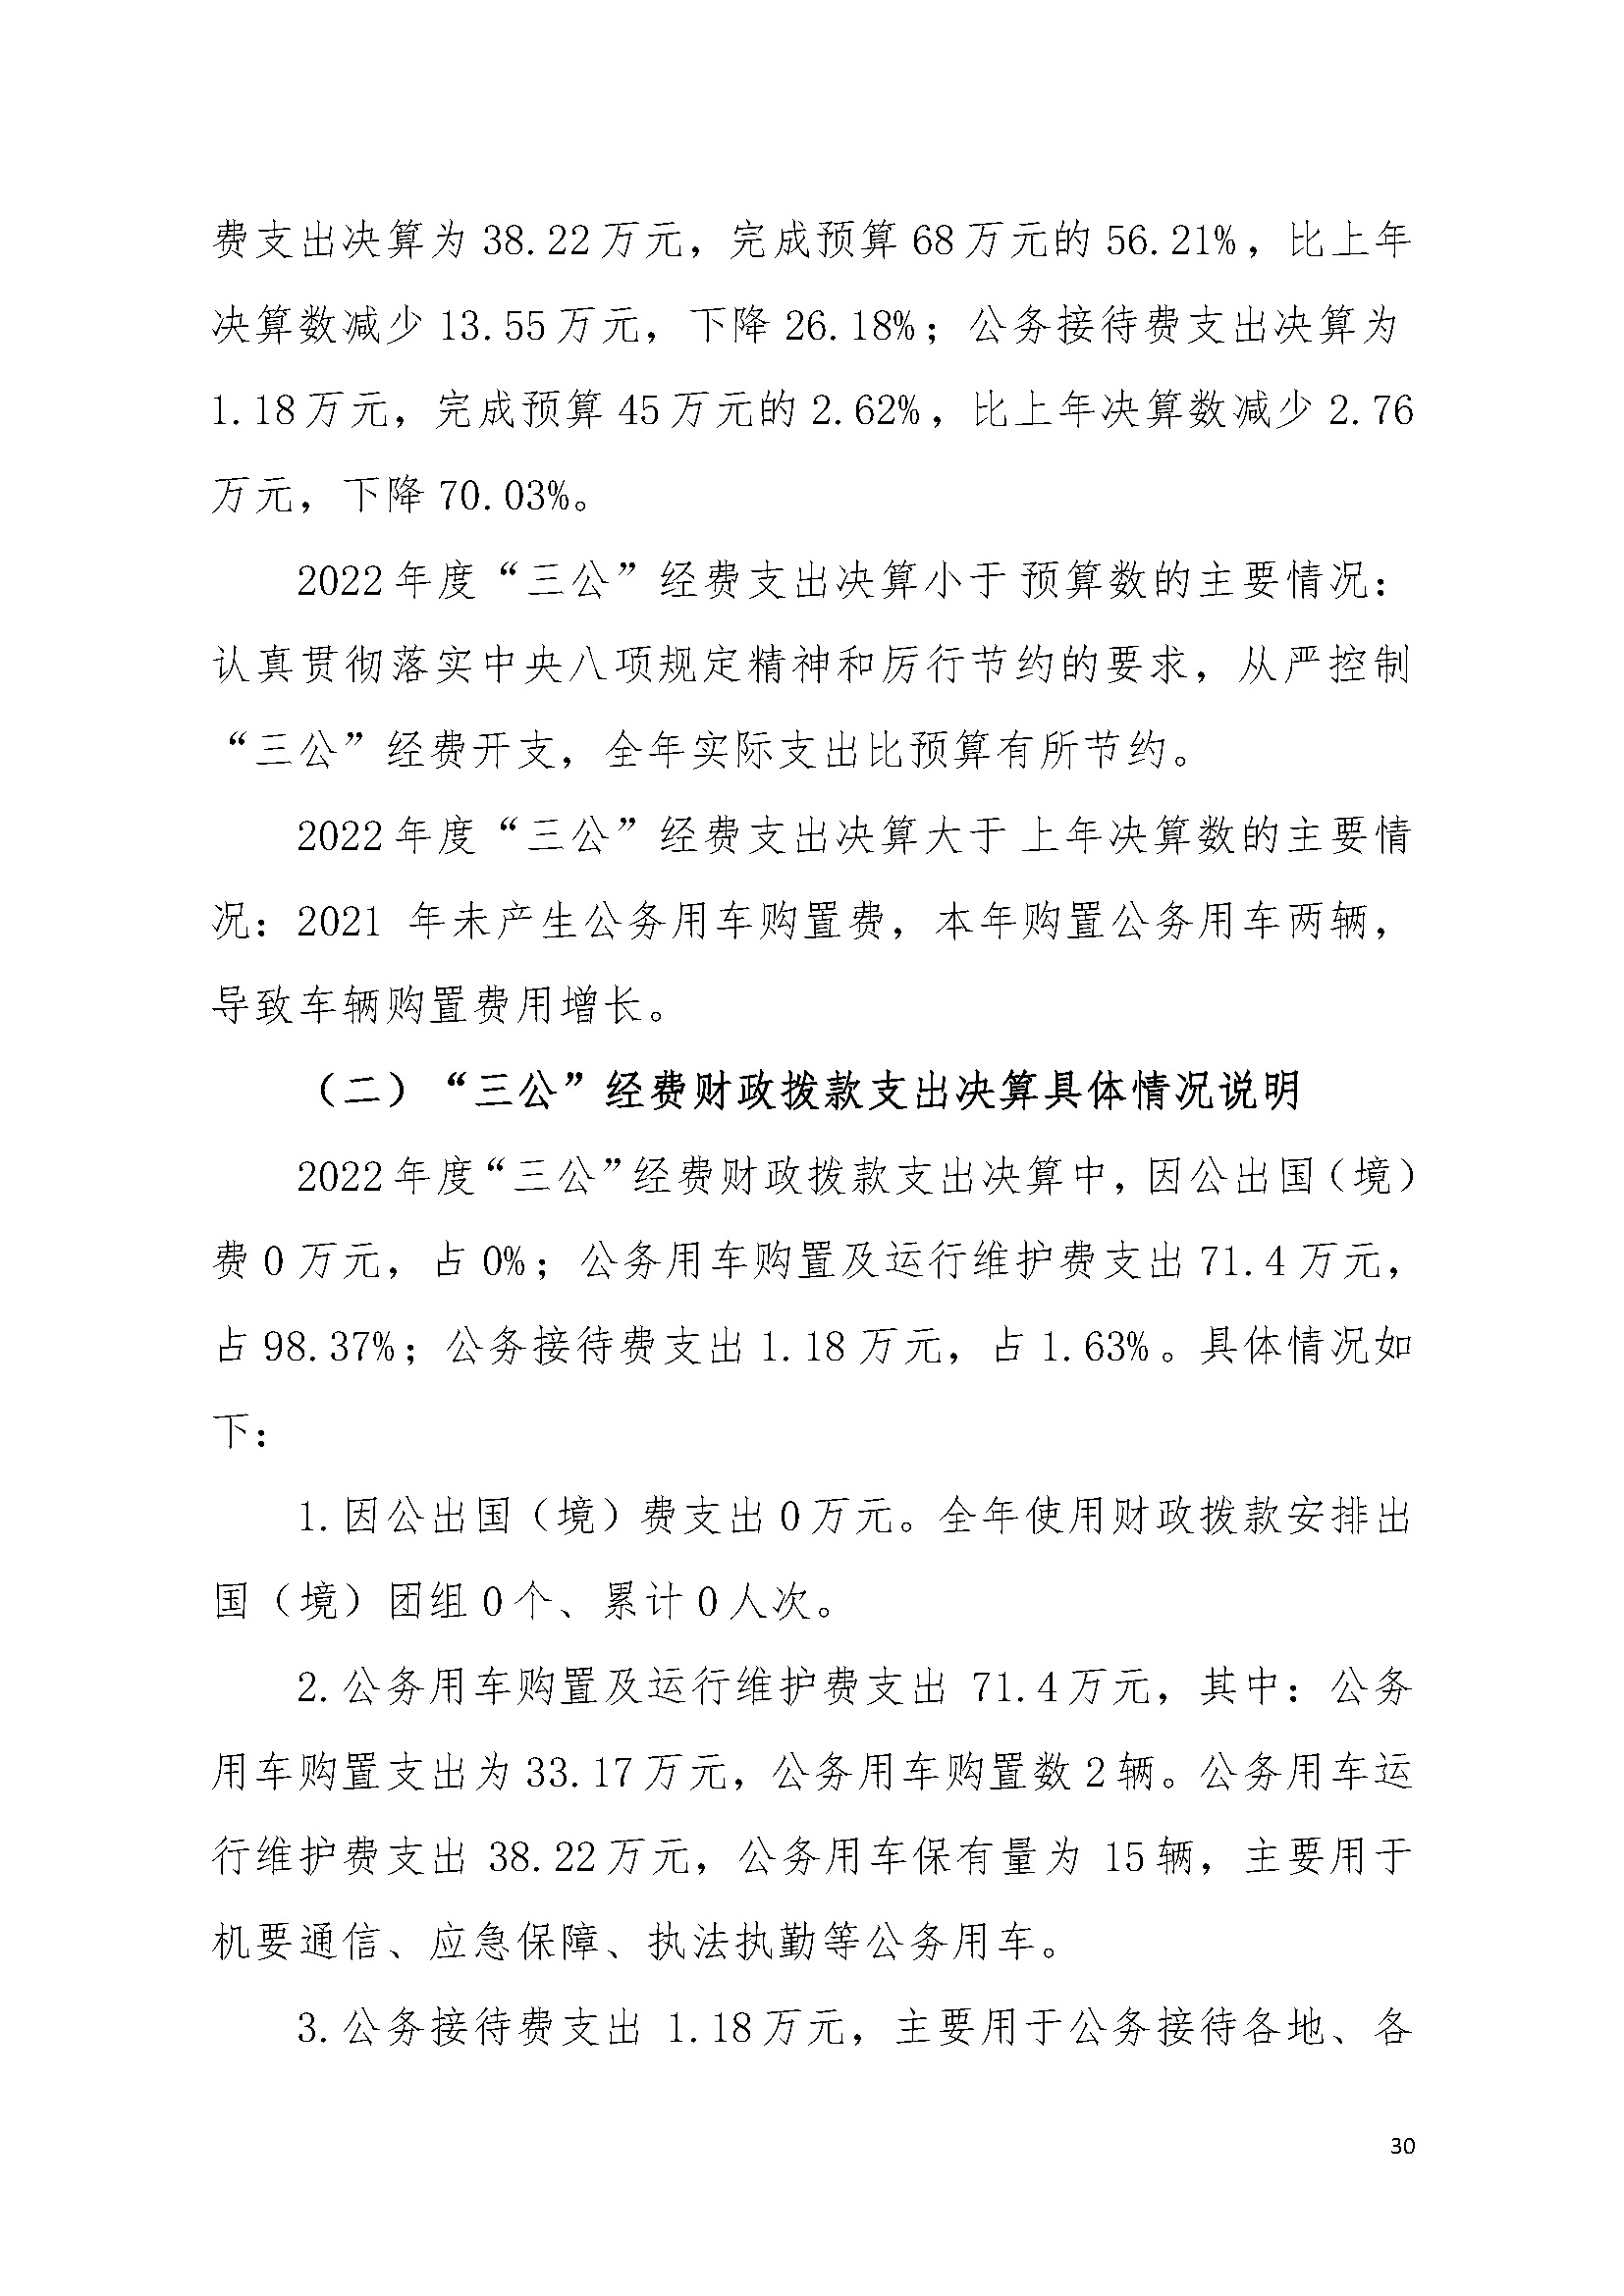 2022年度广东省司法厅部门决算__页面_30.jpg